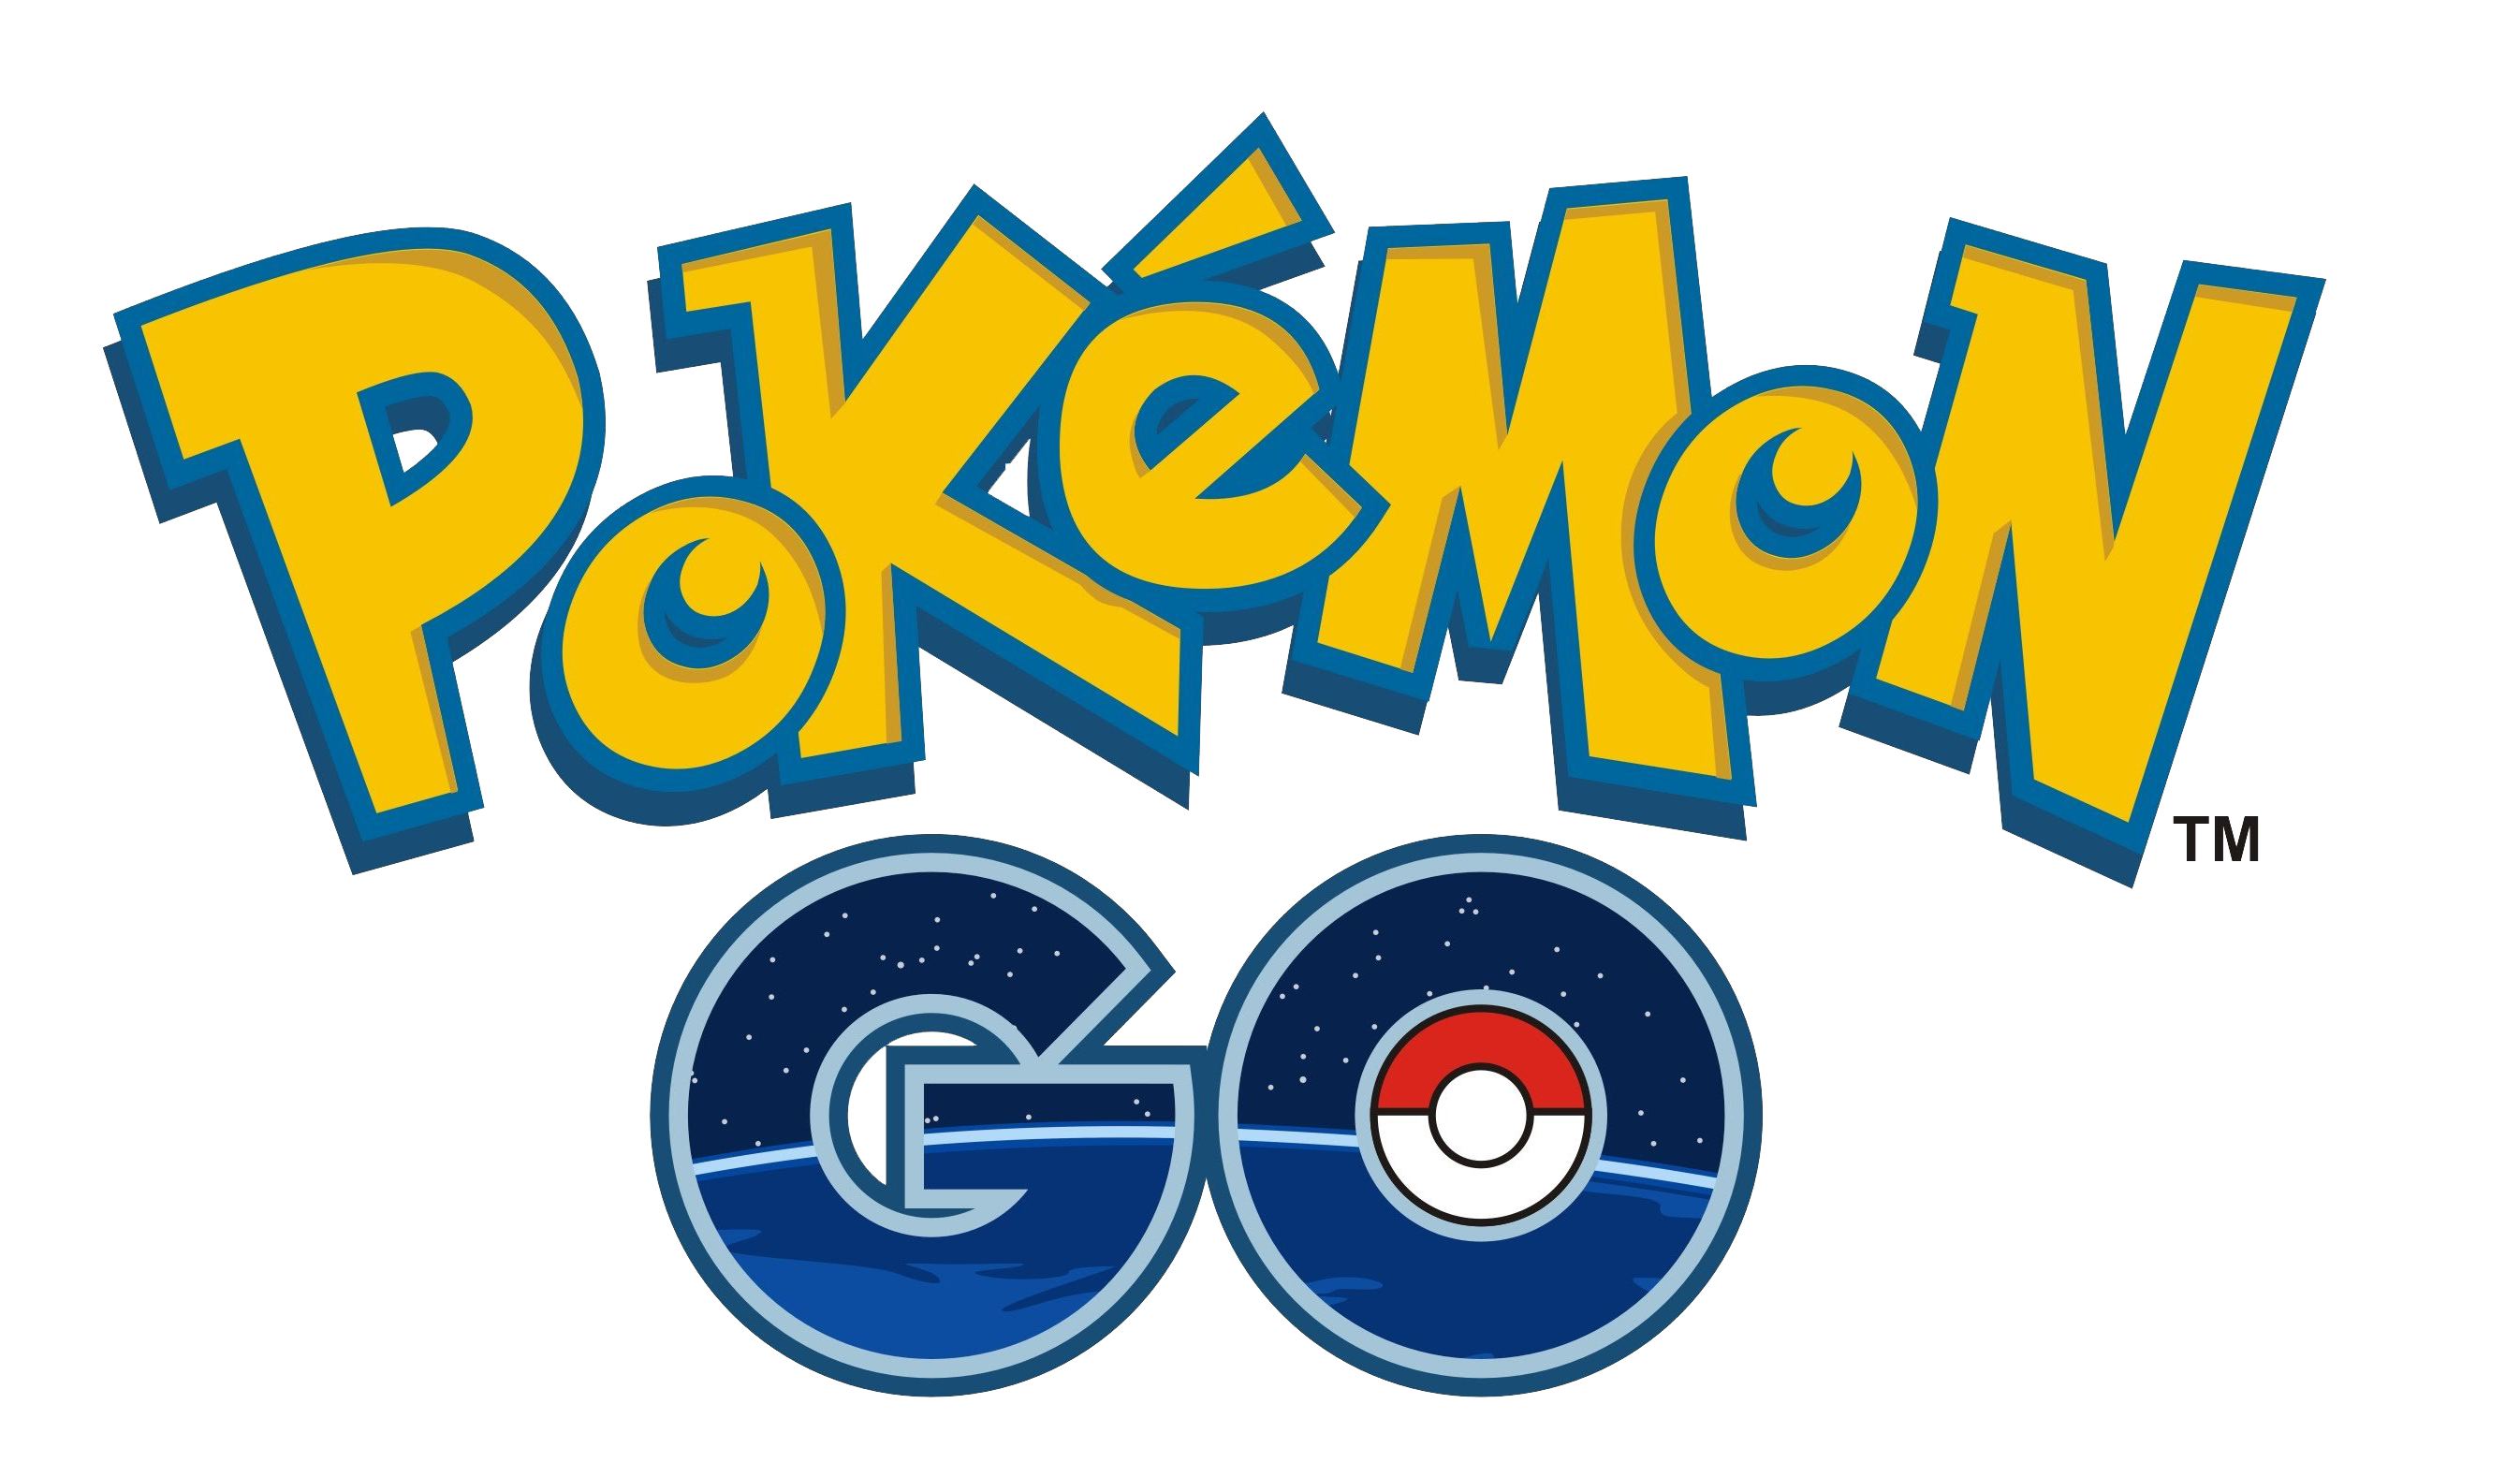 Pokémon GO Logo